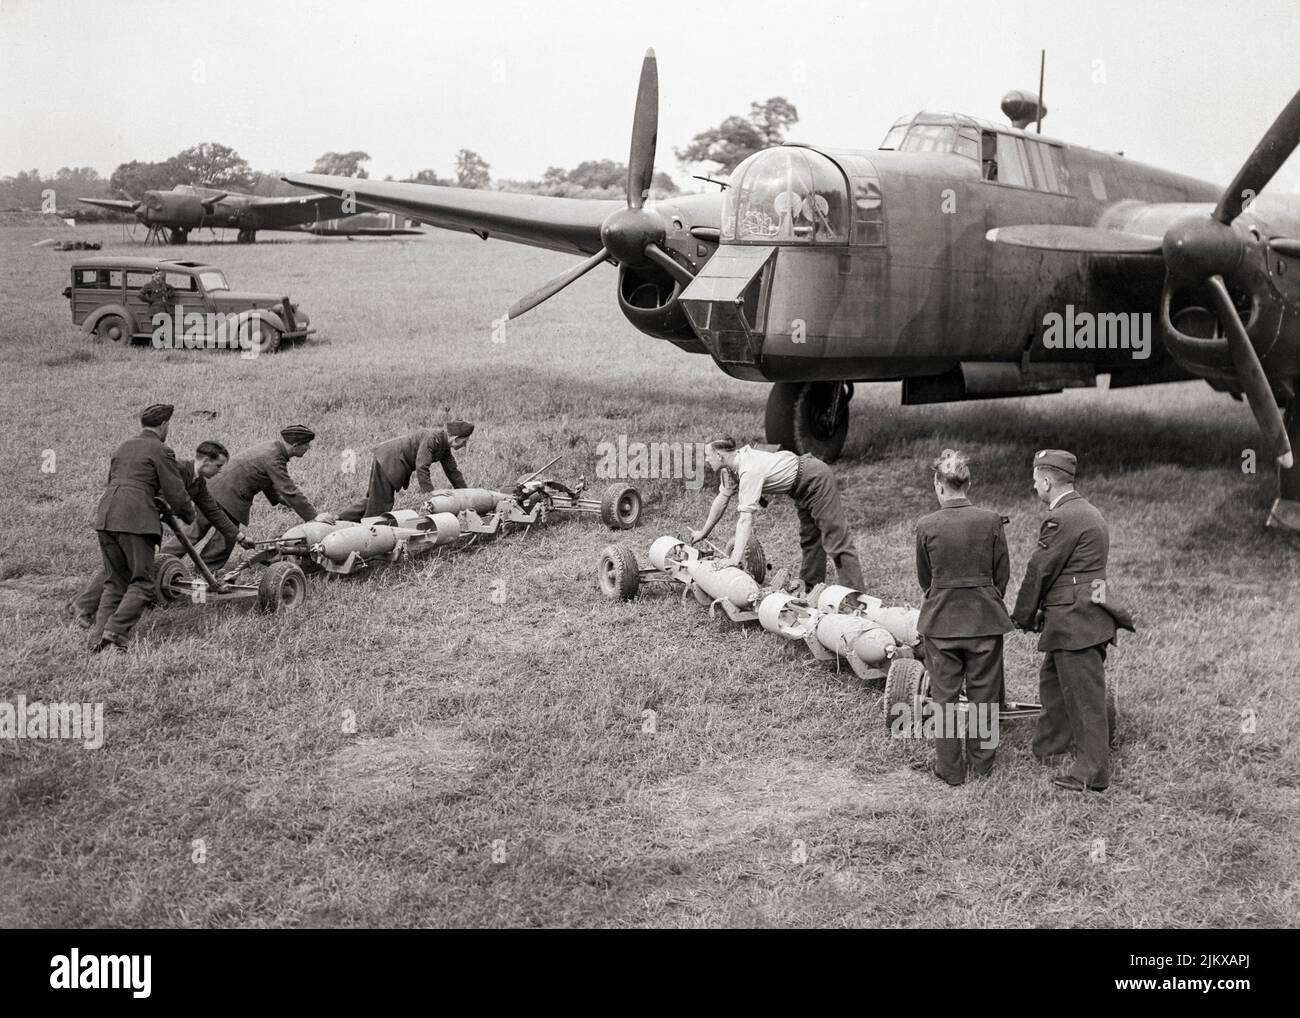 Waffenwagen mit 500 Pfund schweren GP-Bomben in Richtung der offenen Bombenbucht eines Armstrong Whitworth Whitley Mark V der Squadron RAF Nr. 58 in Linton-on-Ouse, Yorkshire, England. Der Armstrong Whitworth Whitley war ein britischer mittlerer Bomber, einer von drei zweimotorigen, Mittlere Bombertypen an der Front im Einsatz bei der Royal Air Force (RAF) bei Ausbruch des Zweiten Weltkriegs. Neben Vickers Wellington und Handley Page Hampden. 1942 wurde sie als Bomber von den größeren viermotorigen „Schweren“ wie der Avro Lancaster abgelöst. Stockfoto